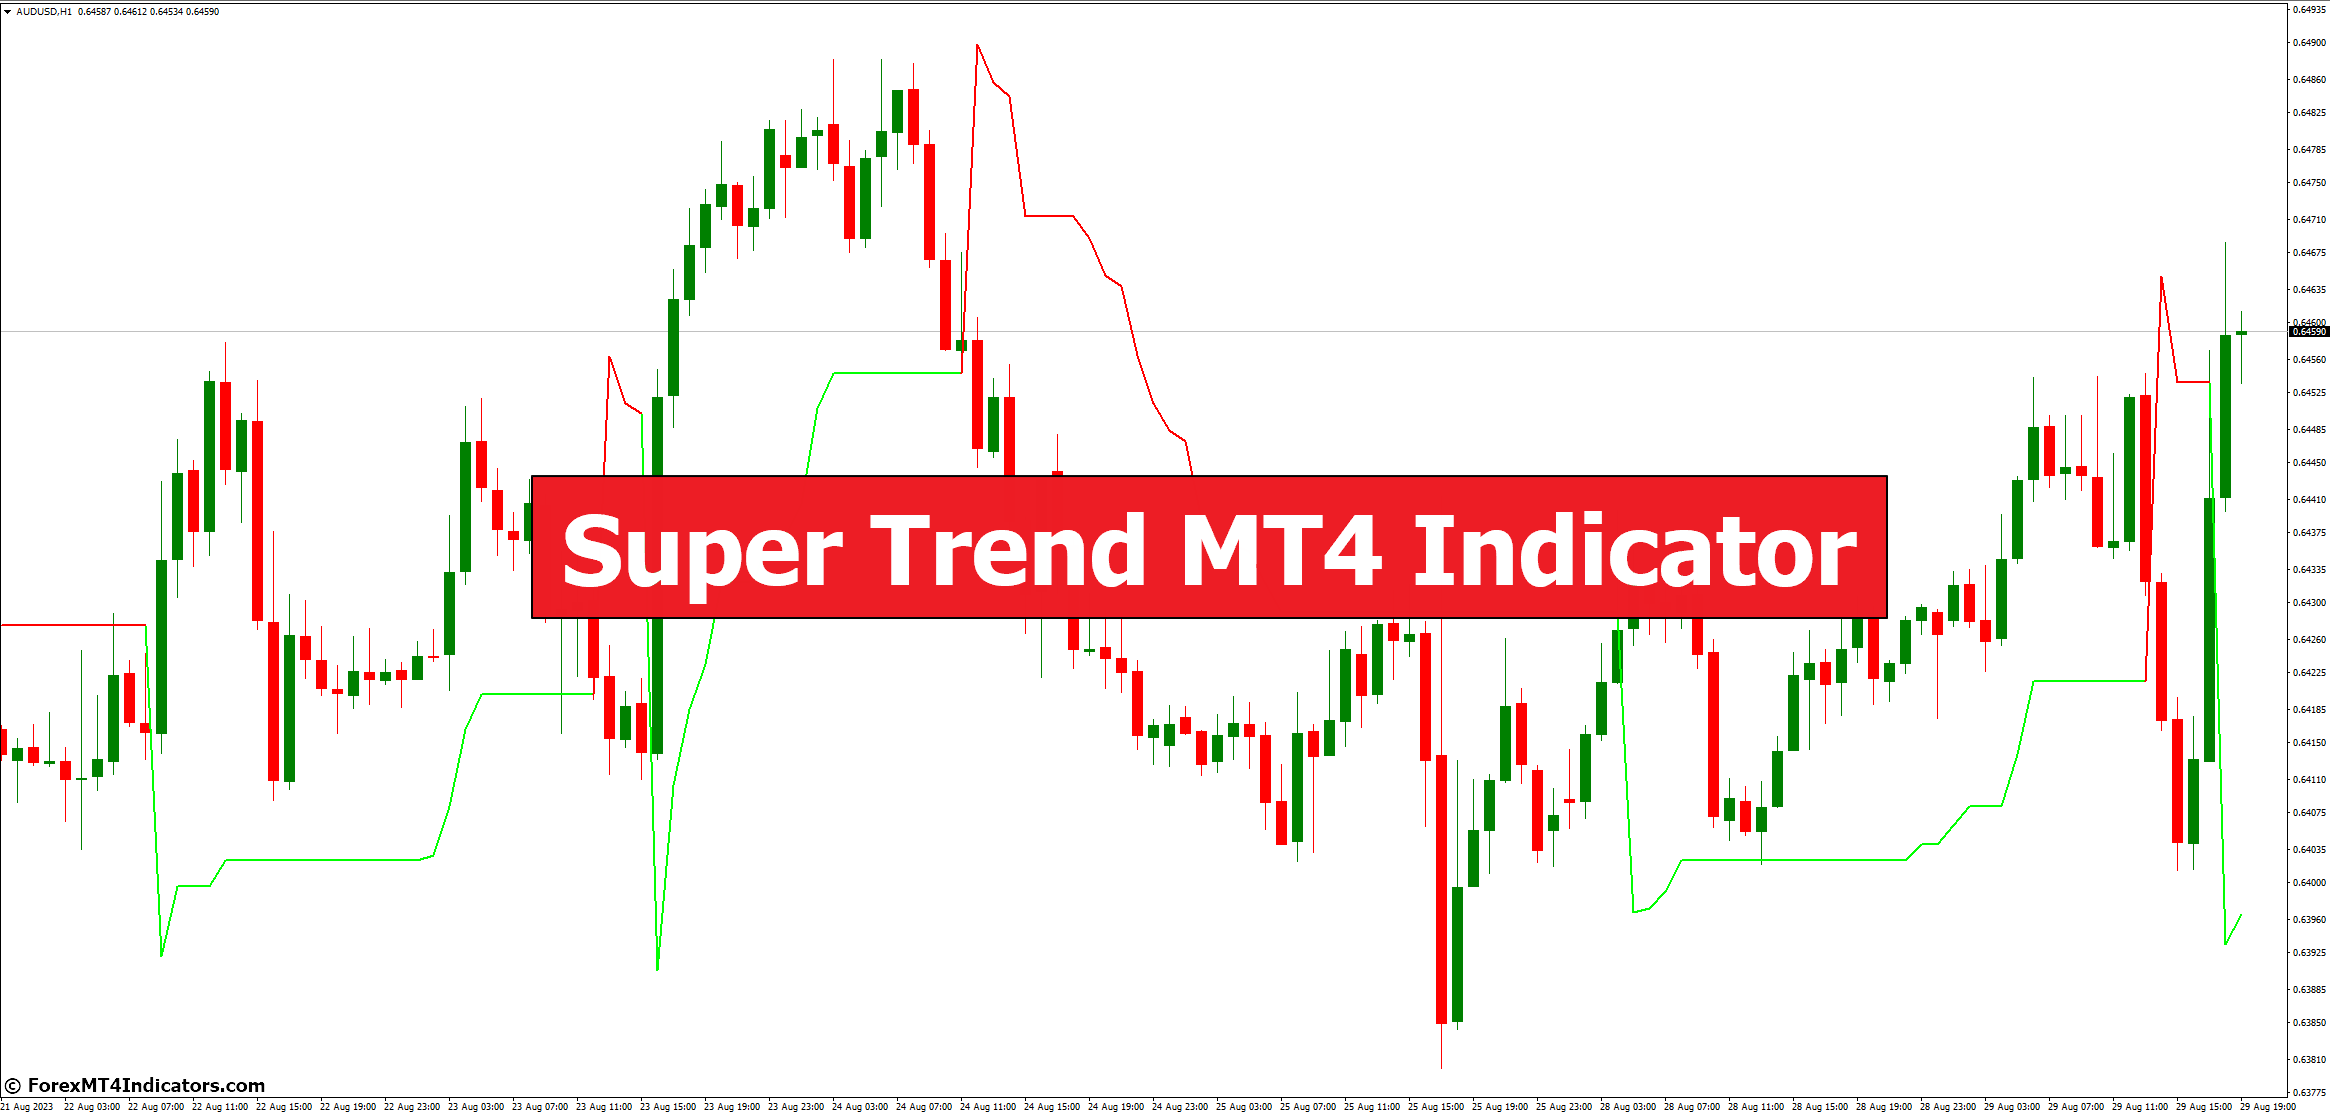 Super Trend MT4 Indicator